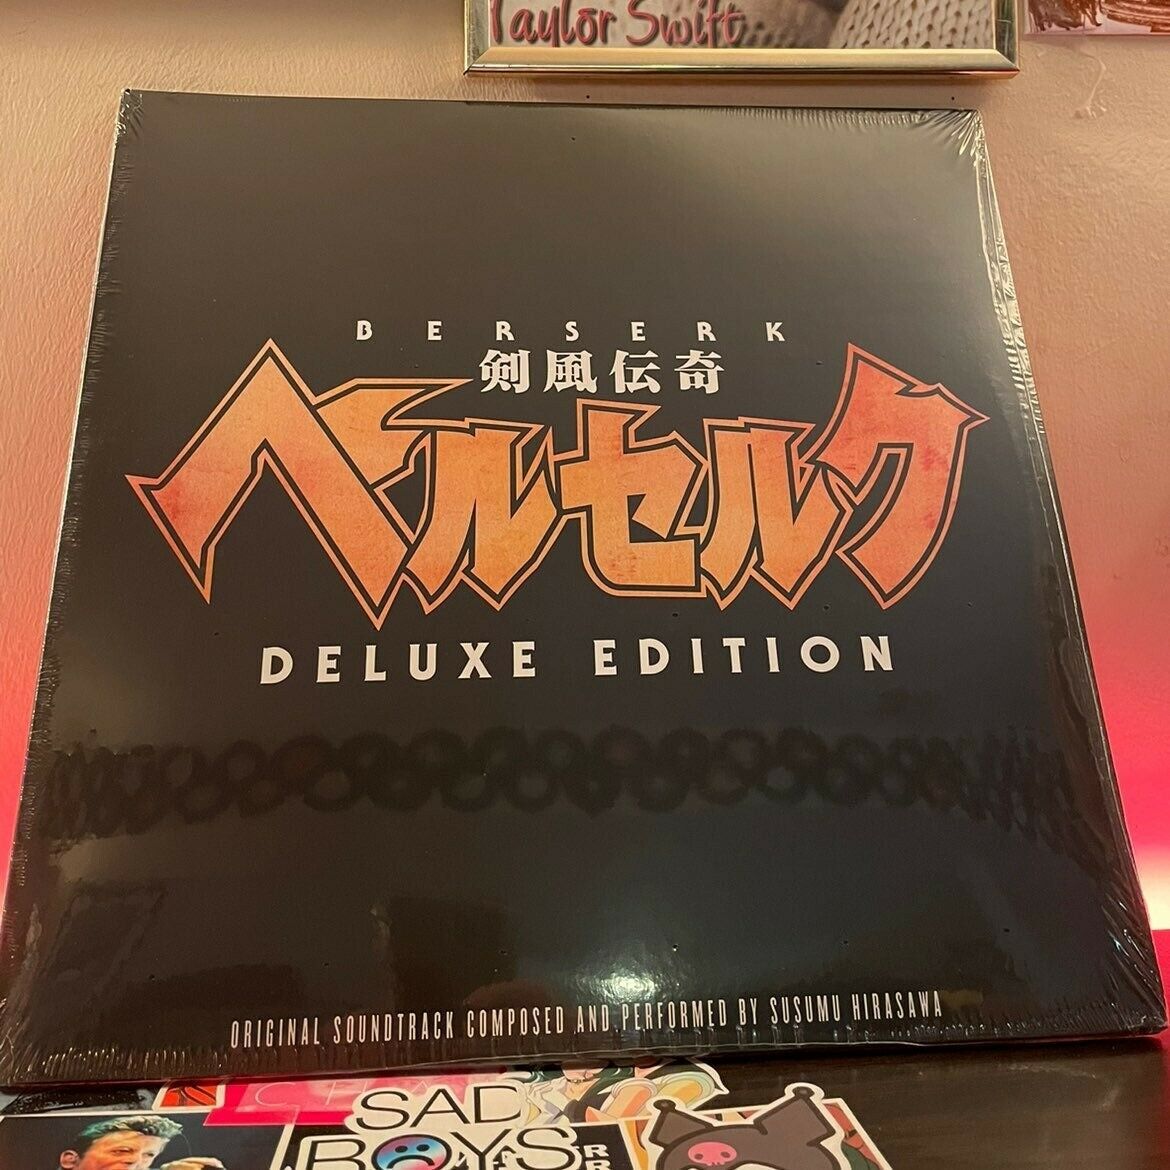 Suサム～調和 61%OFF u Hirasawa Berserk Deluxe Edition LP OST 海外 Vinyl 即決 新版